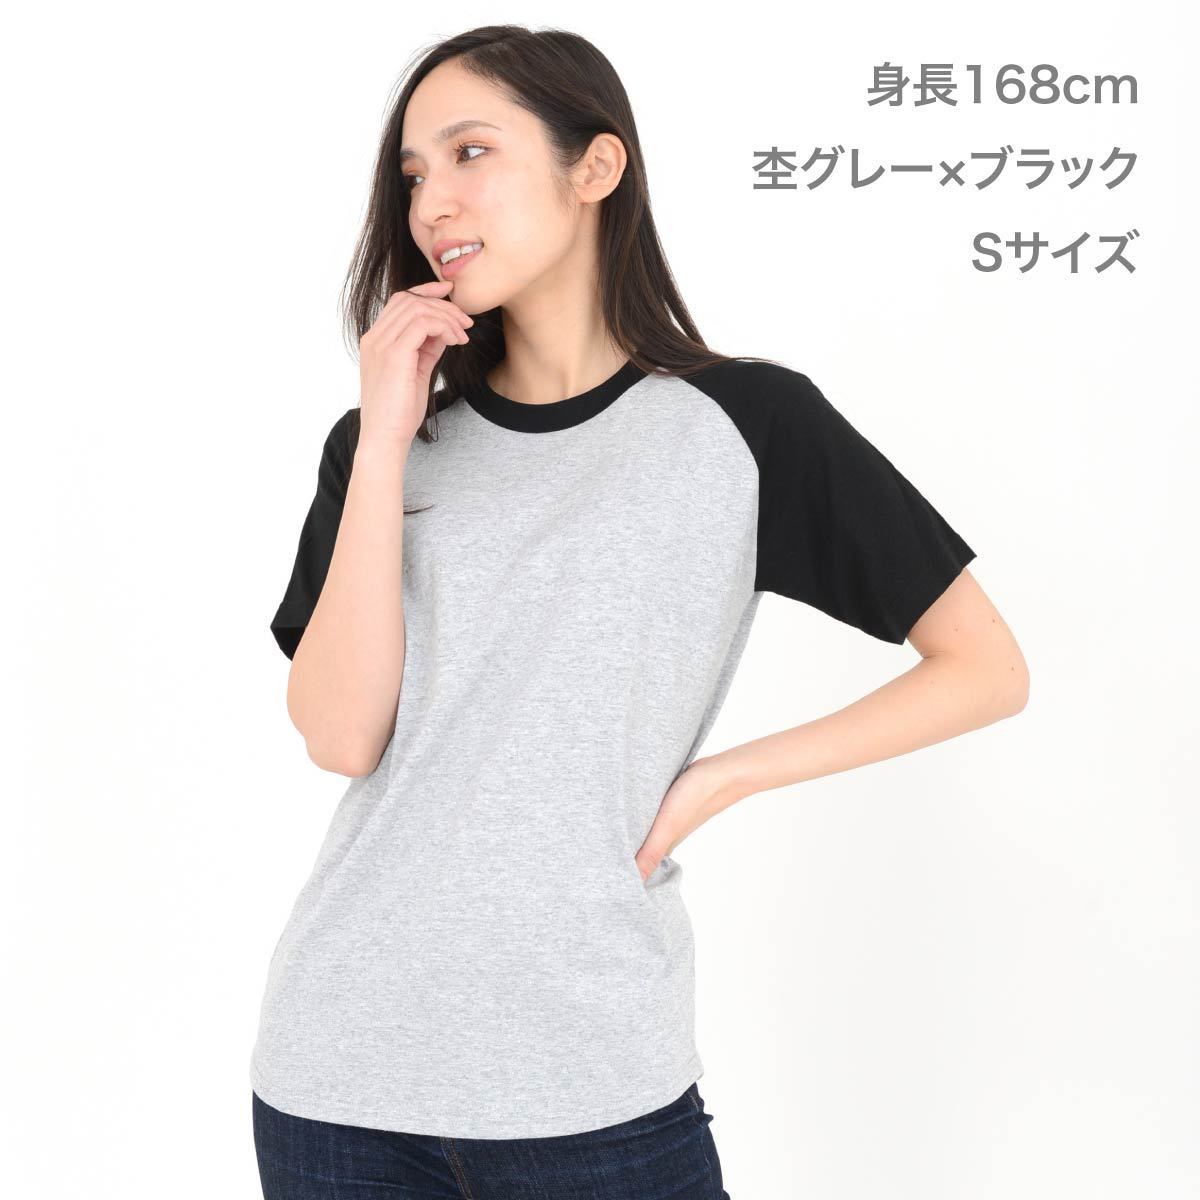 5.6オンス ヘビーウェイトラグランTシャツ | ビッグサイズ | 1枚 | 00106-CRT | ホワイト×レッド